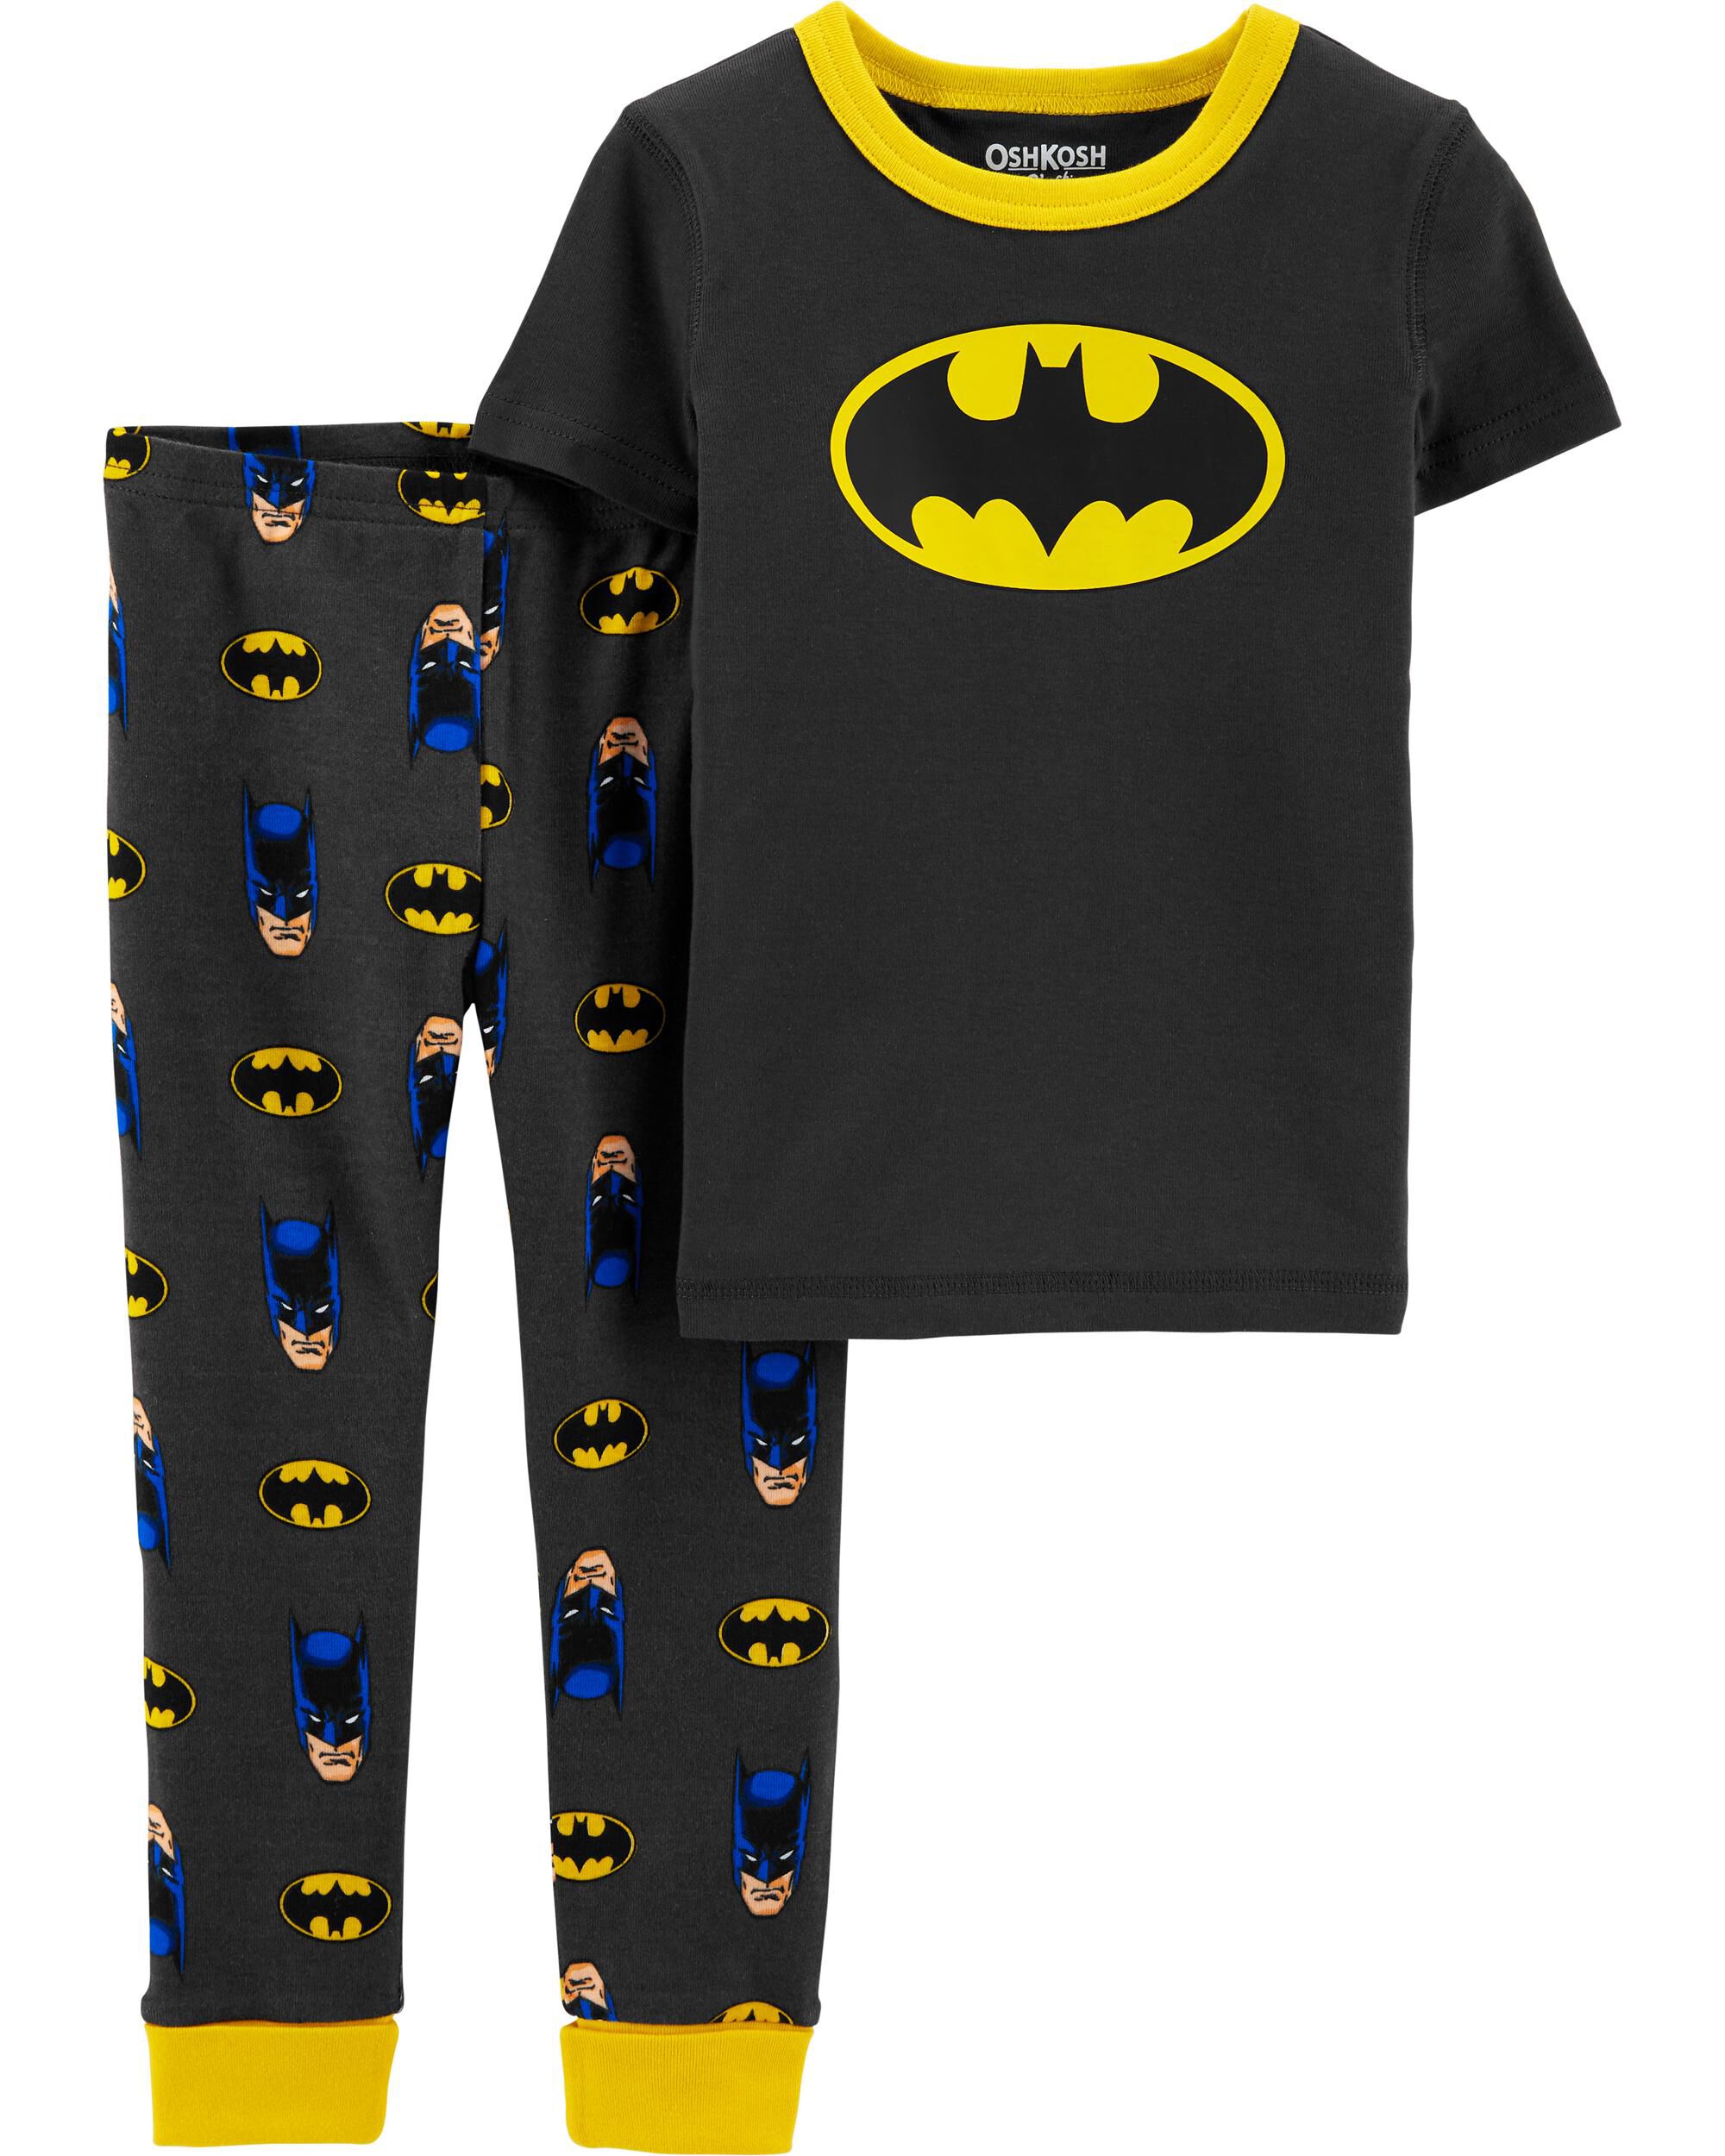 BATMAN Boys Toddler Cotton Non-Footed Pajama 